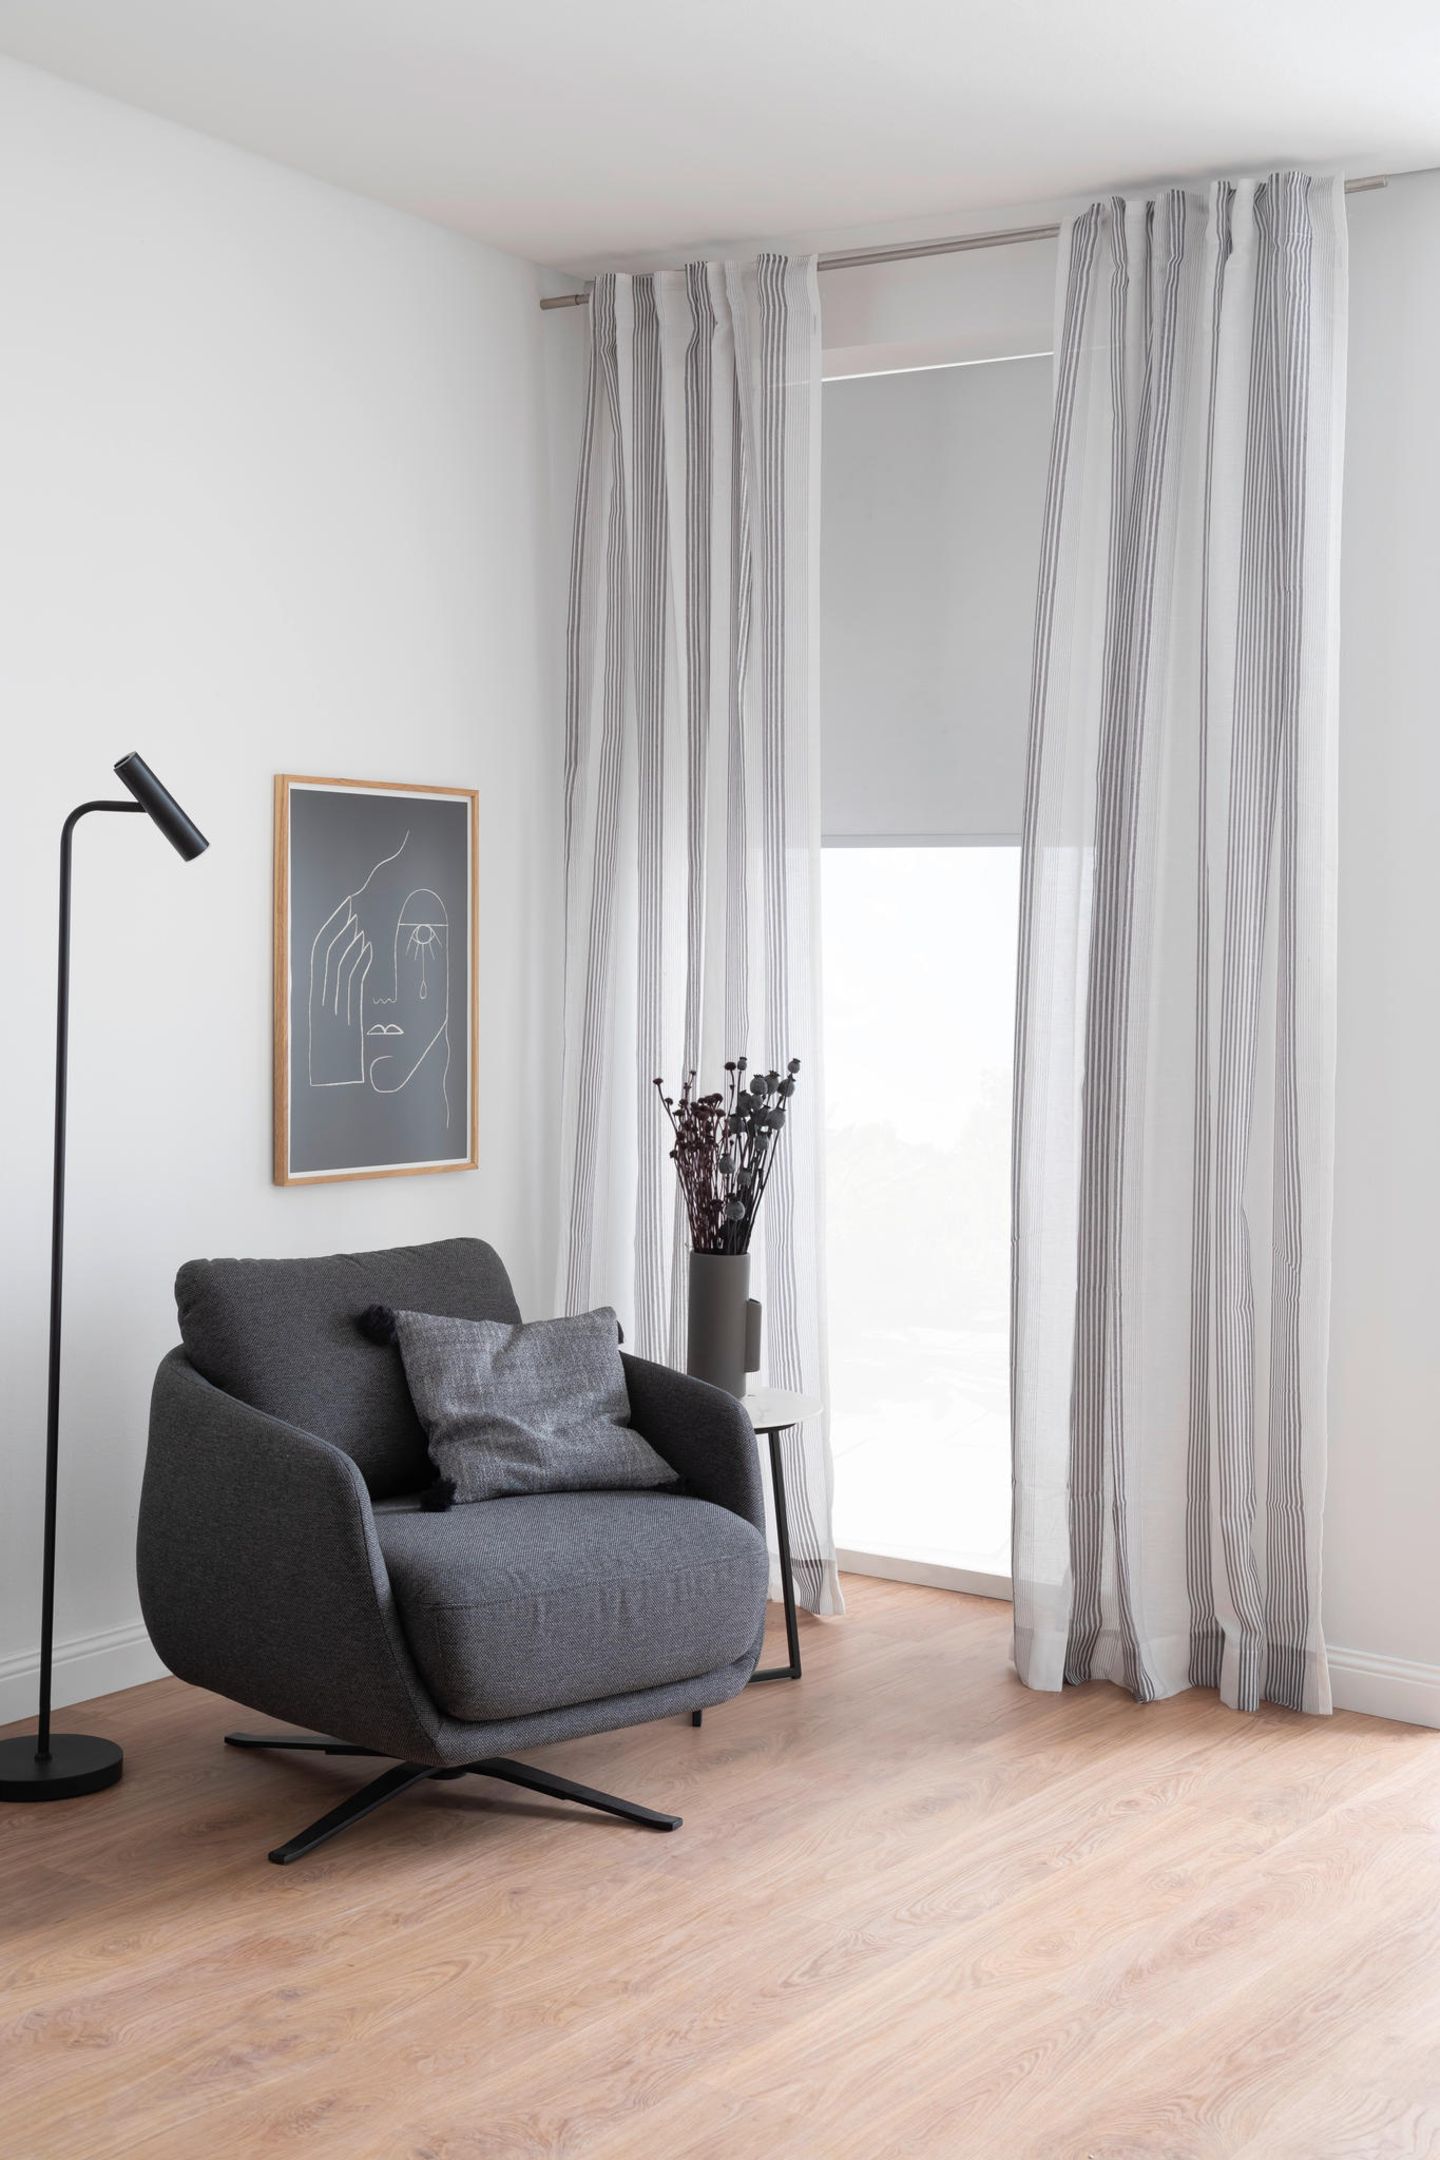 Grauer Sessel vor Fenster mit langen, grauen Vorhängen